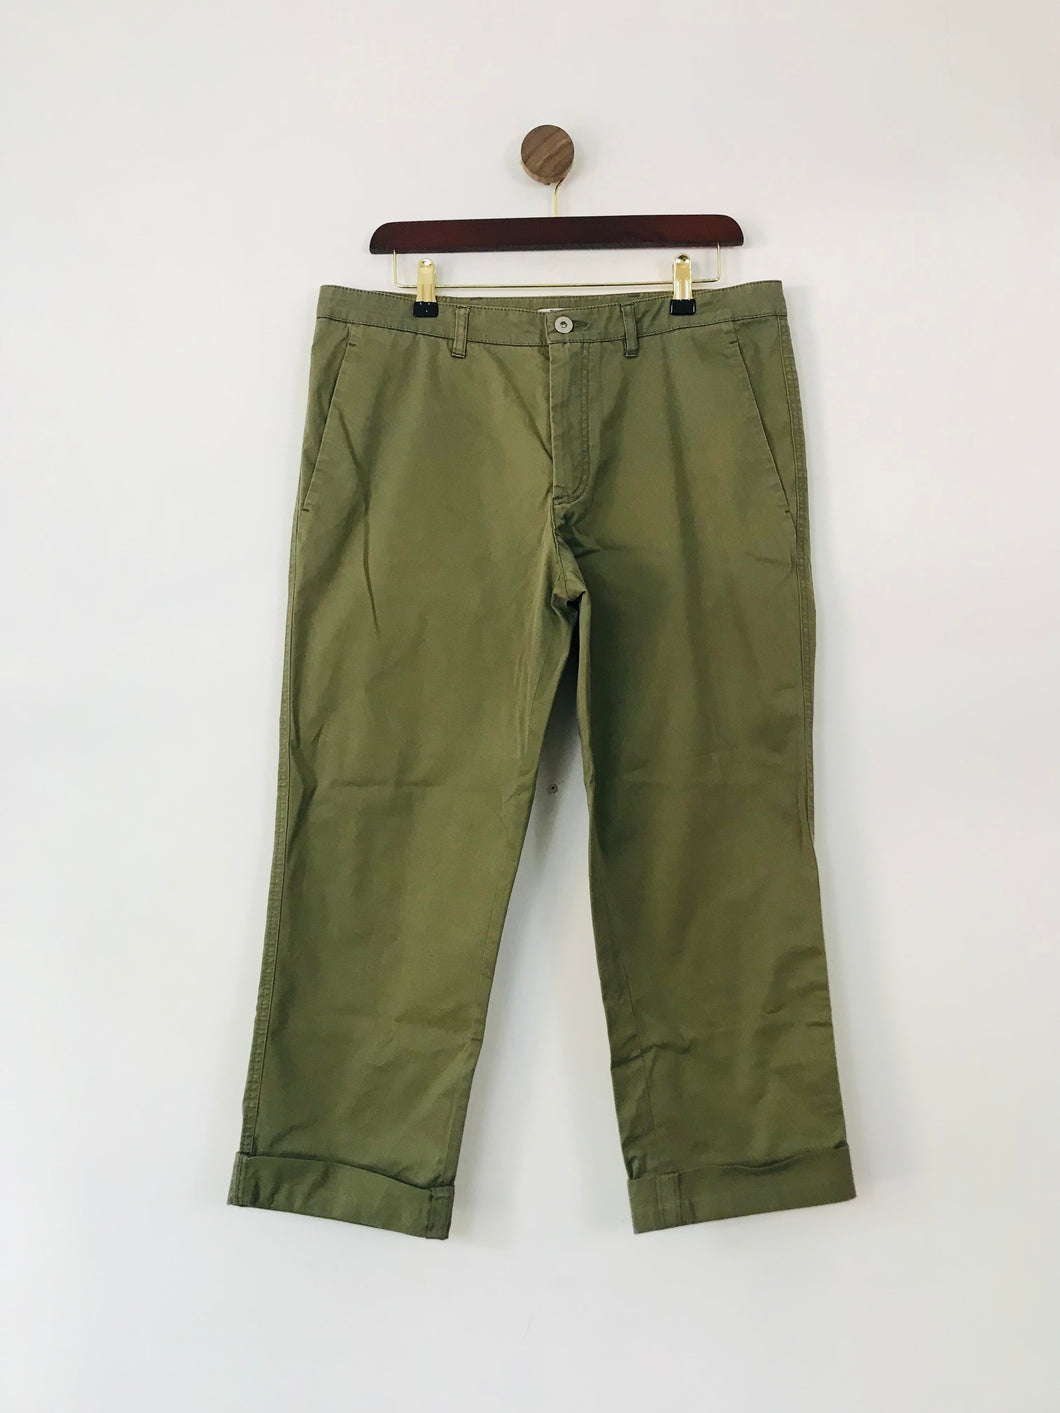 Miu Miu Women's Cotton Chinos Trousers | 44 UK12 | Green